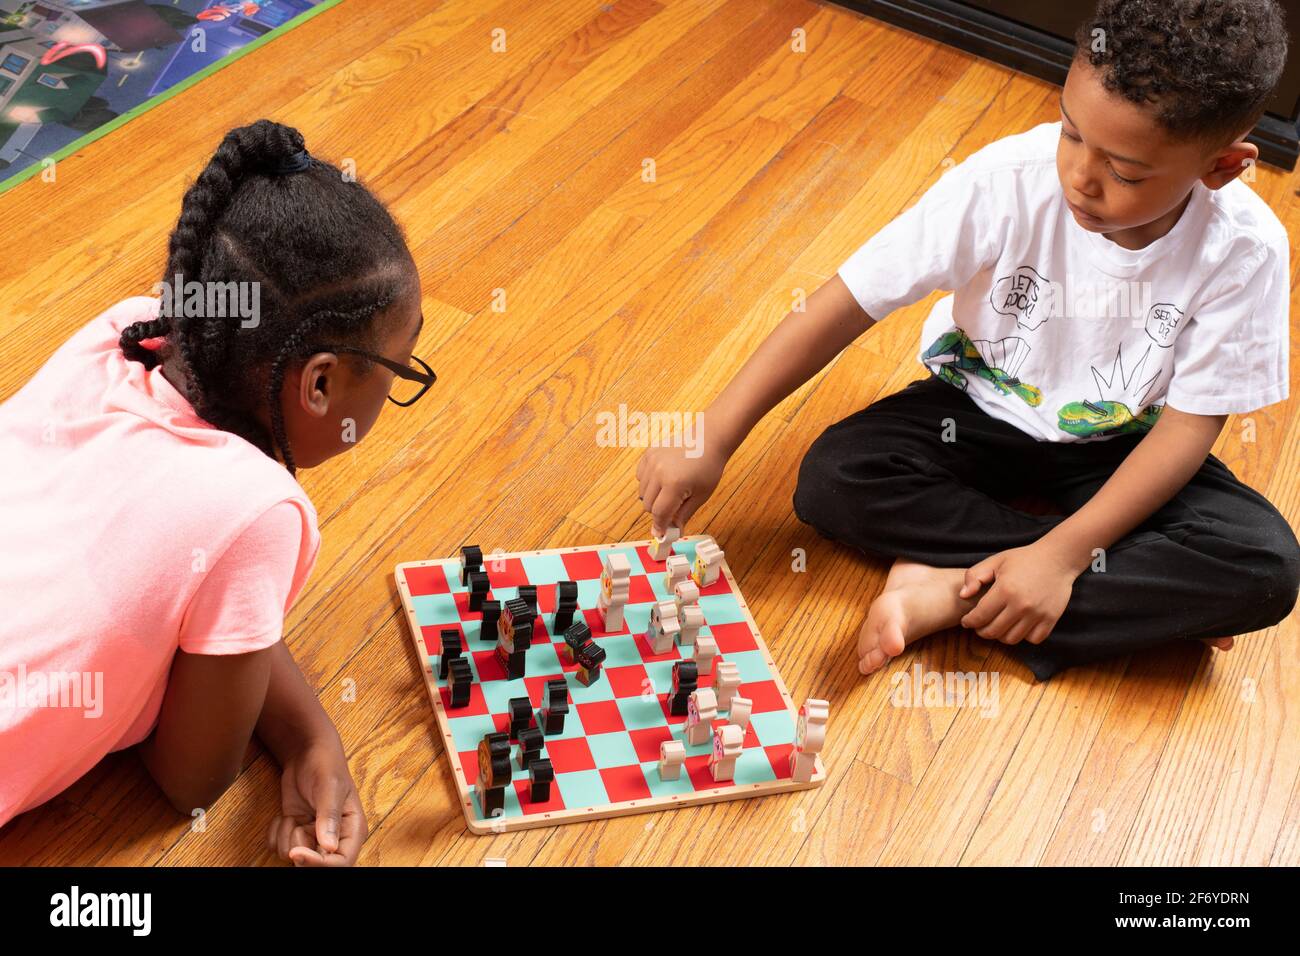 Das 11-jährige Mädchen spielt mit ihrem 6-jährigen Bruder Schach, spielt Spiel und lehrt ihn, wie man spielt Stockfoto